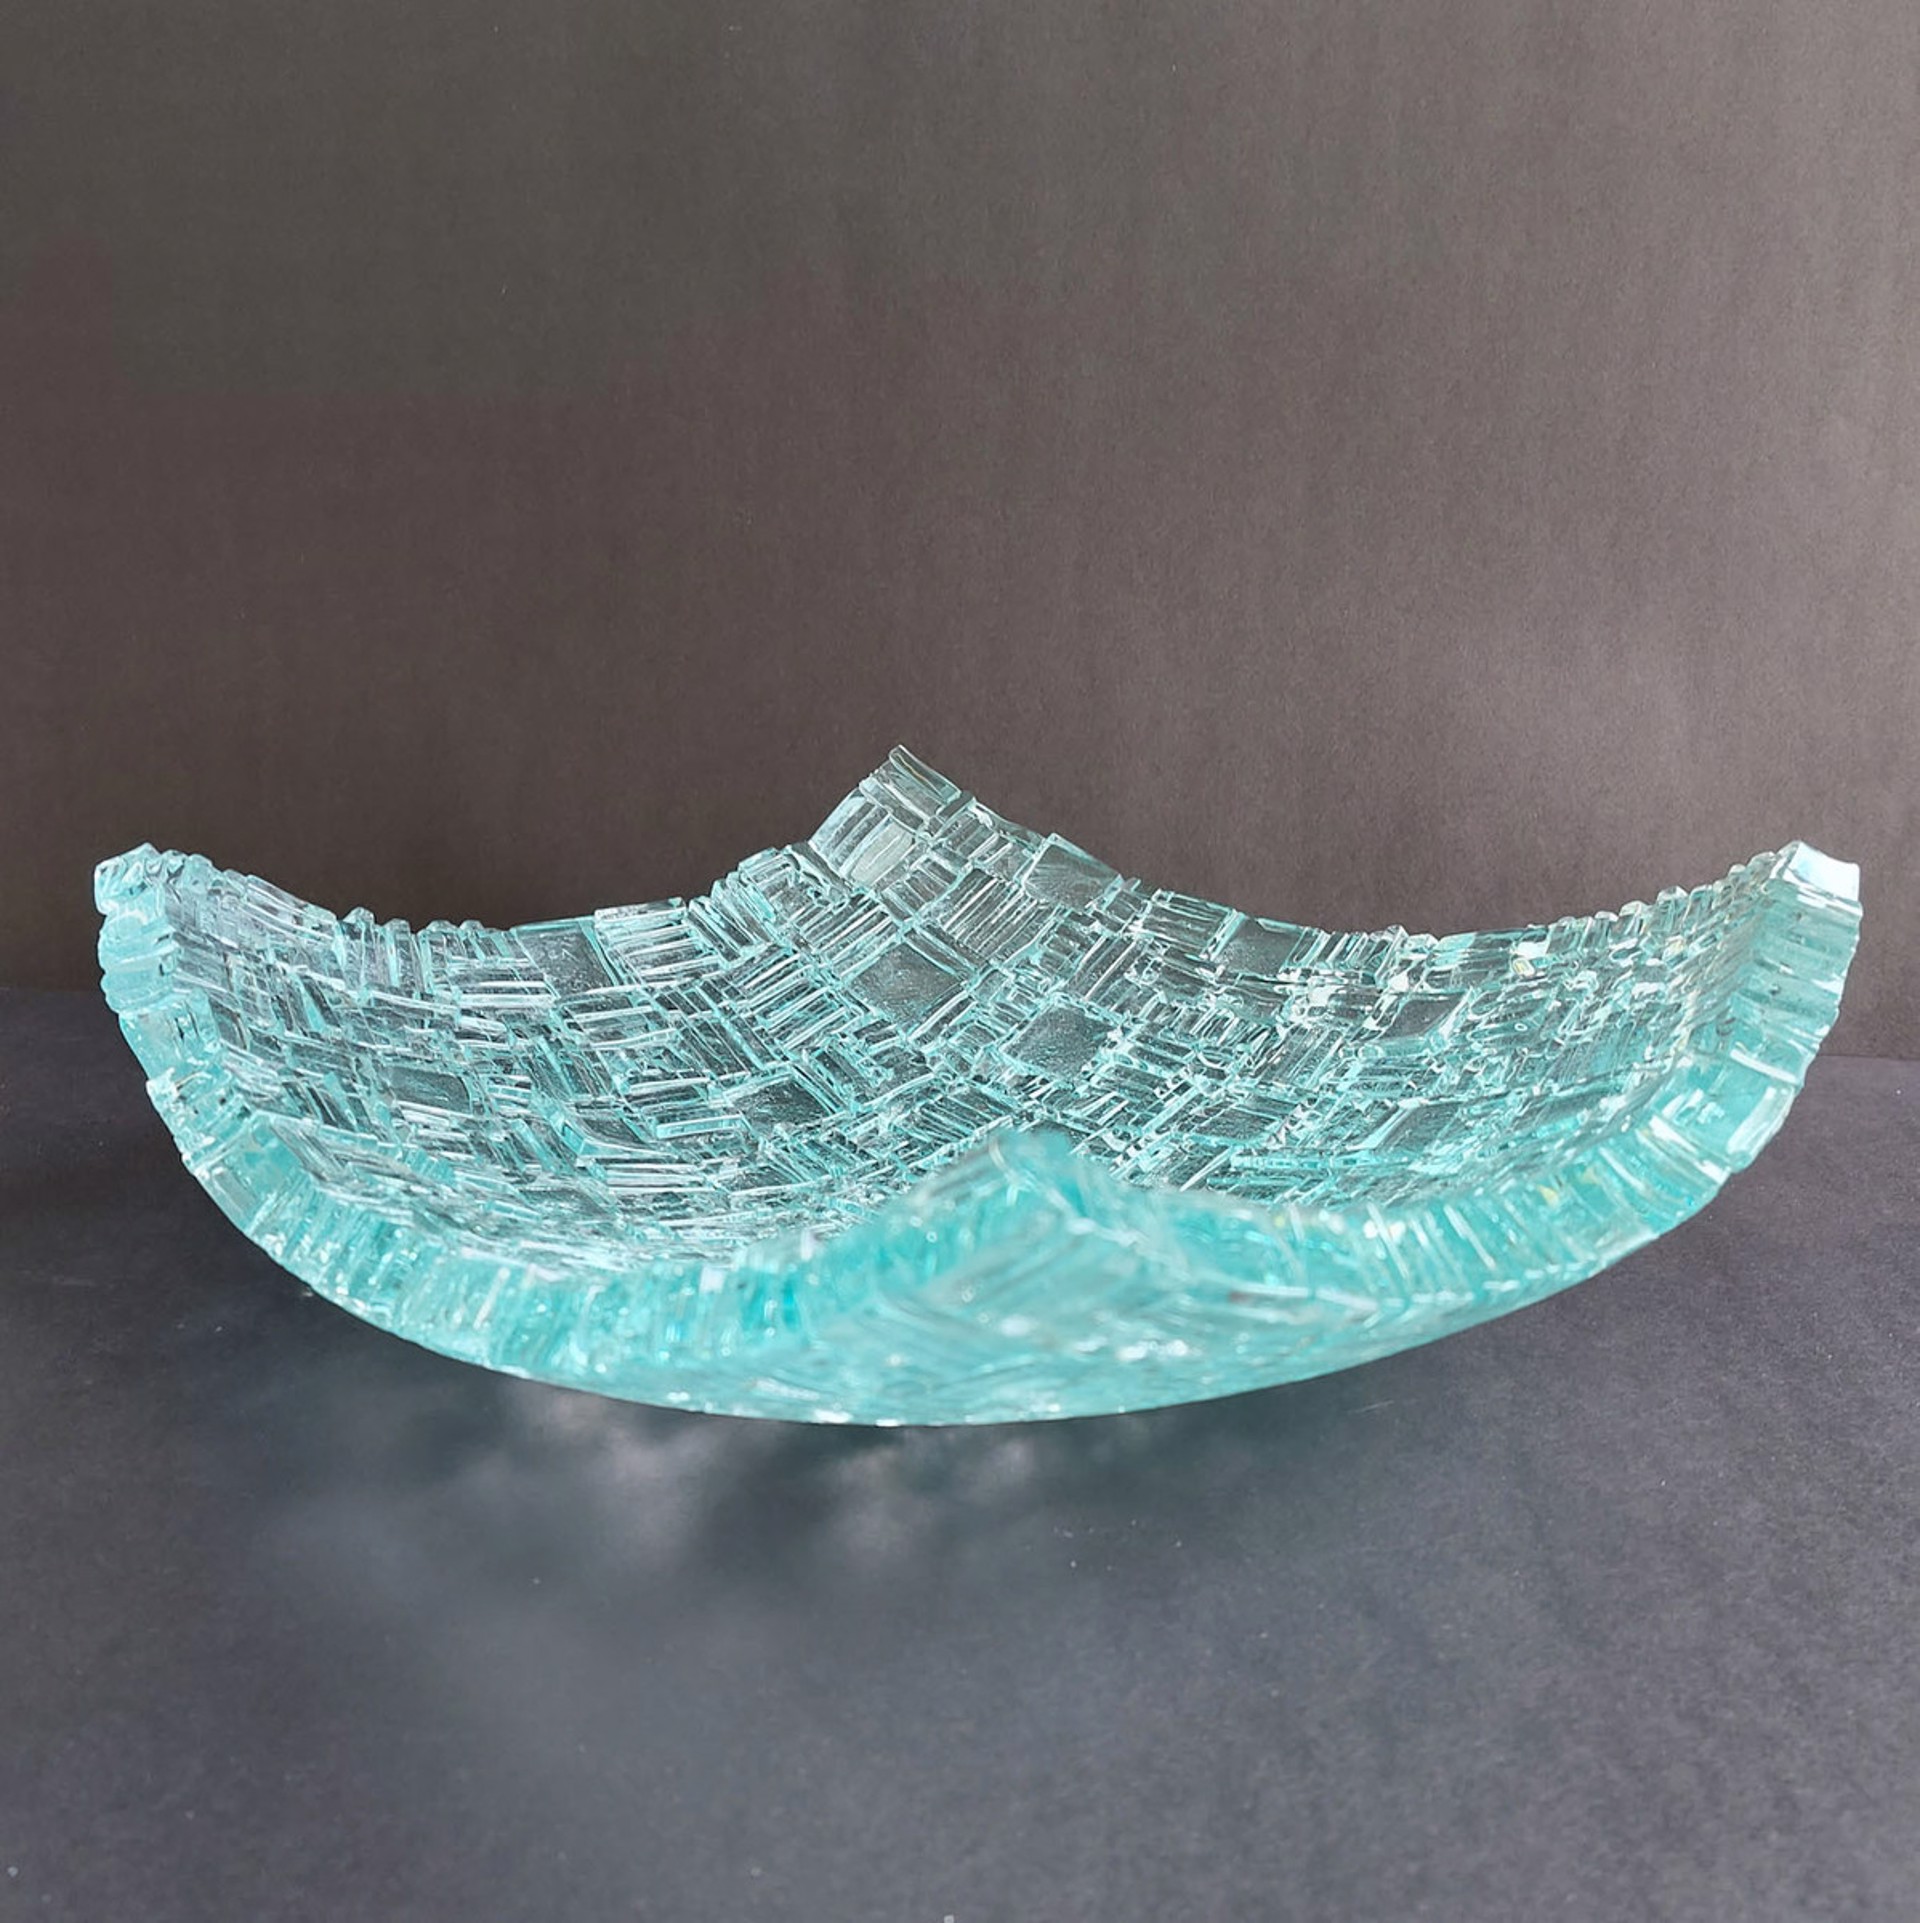 Large Glass Bowl #1 by Christy Haldane